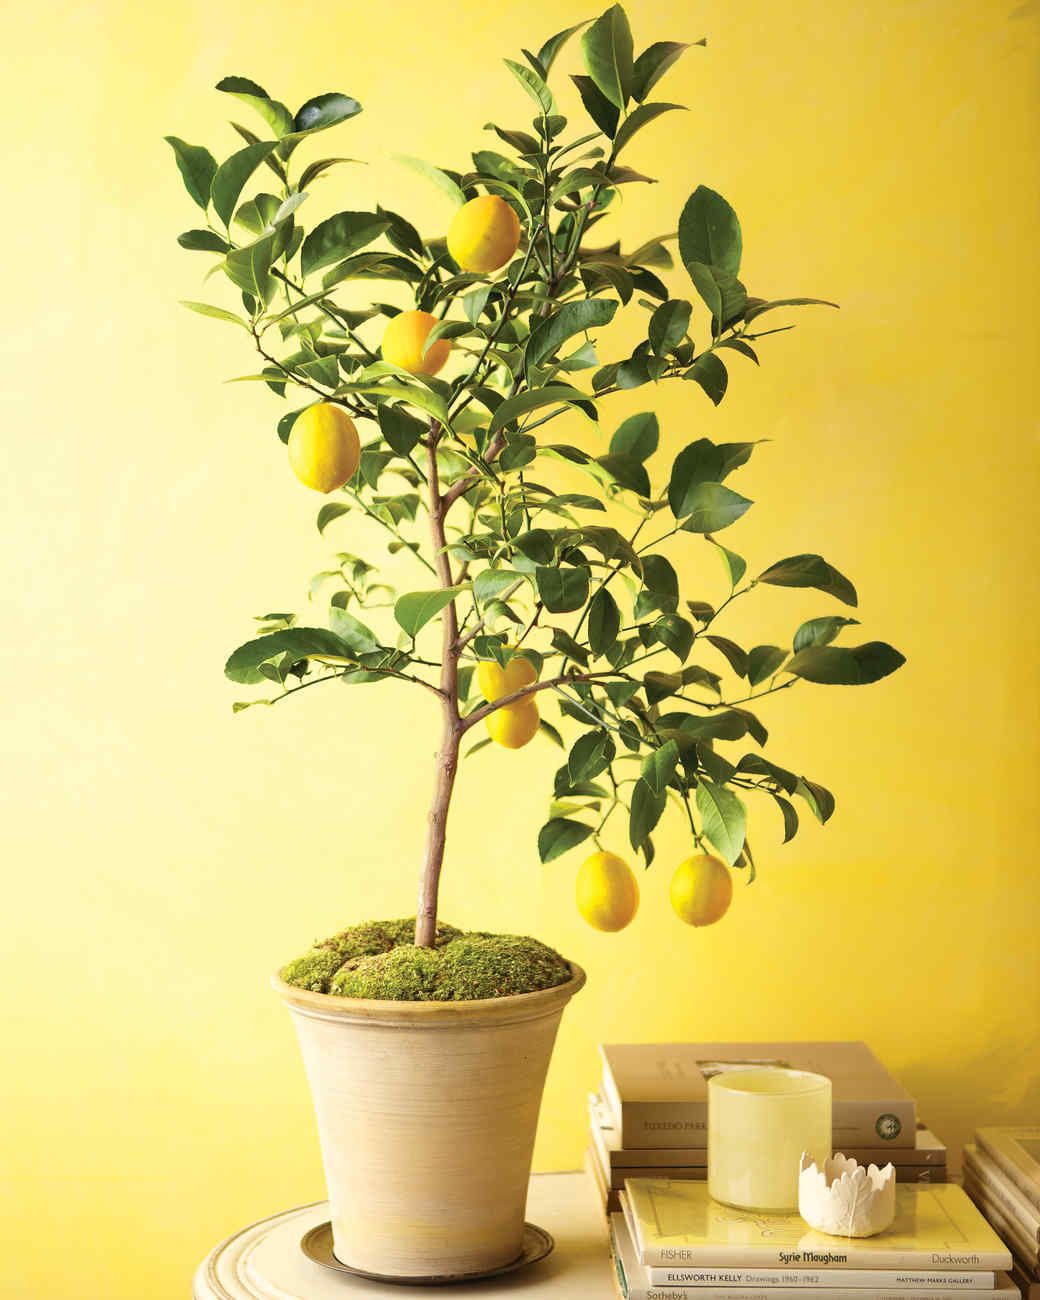 Догляд за рослиною лимонного дерева